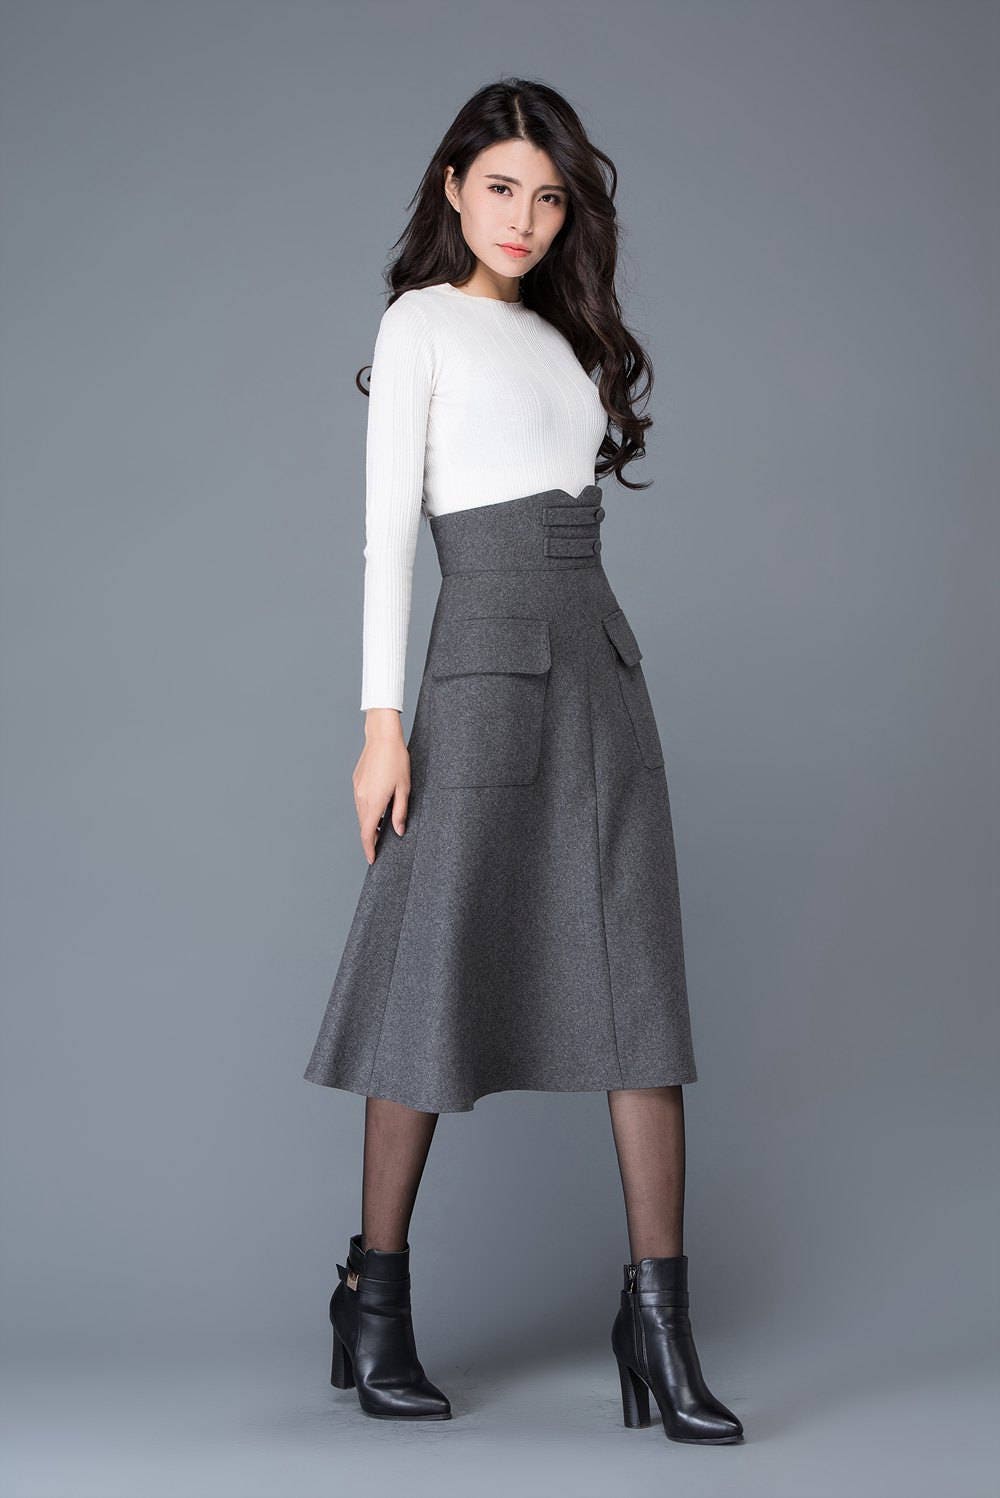 High waisted Wool skirt In gray Midi skirt winter skirts | Etsy